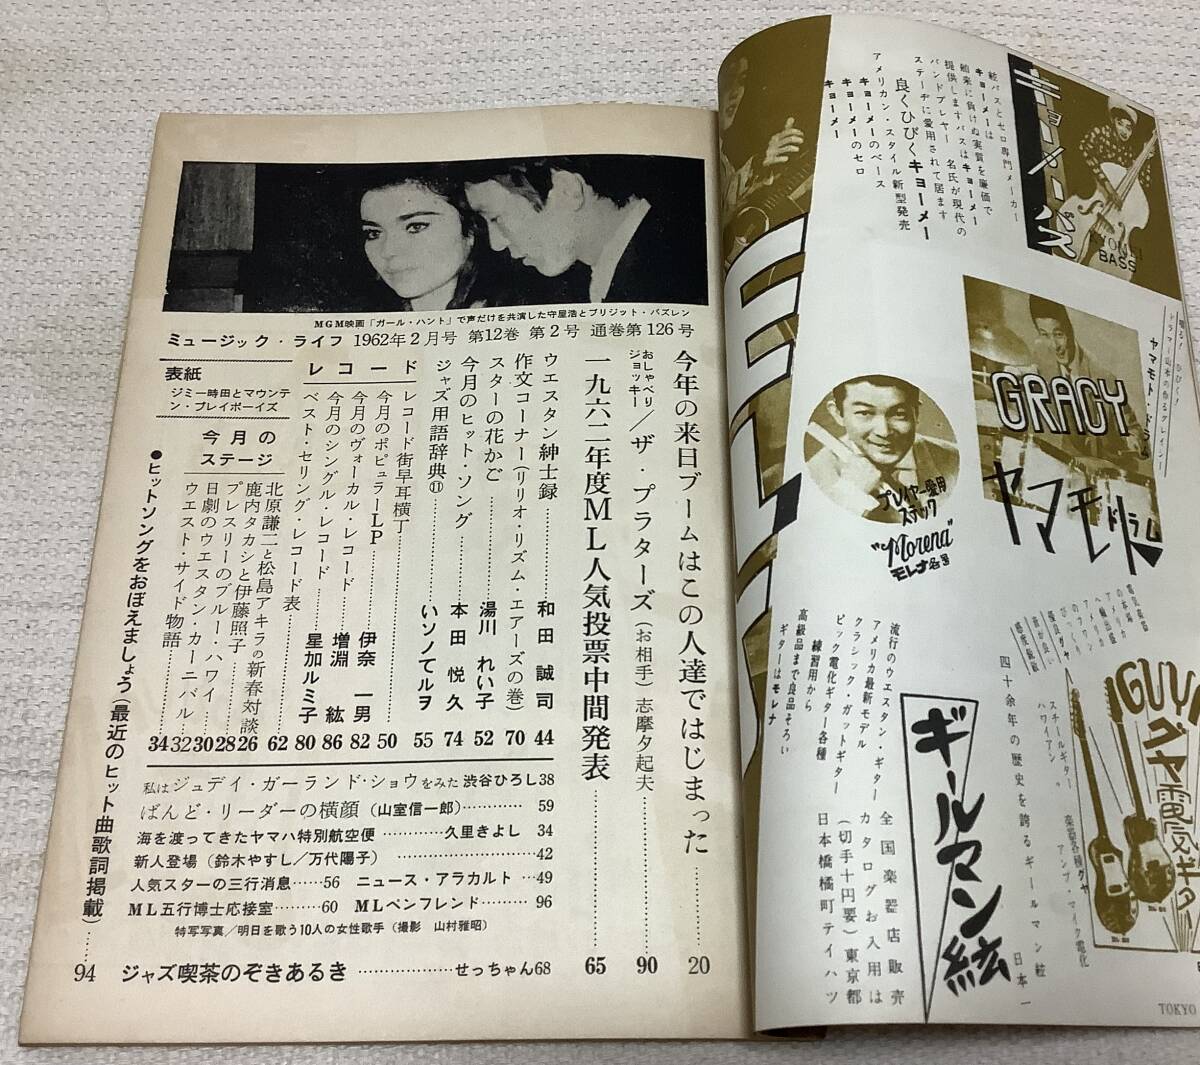 ポピュラー音楽の専門誌 ミュージック・ライフ 1962年2月号 music life 昭和37 古本 雑誌 ジミー時田とマウンテン・プレイボーイズの画像3